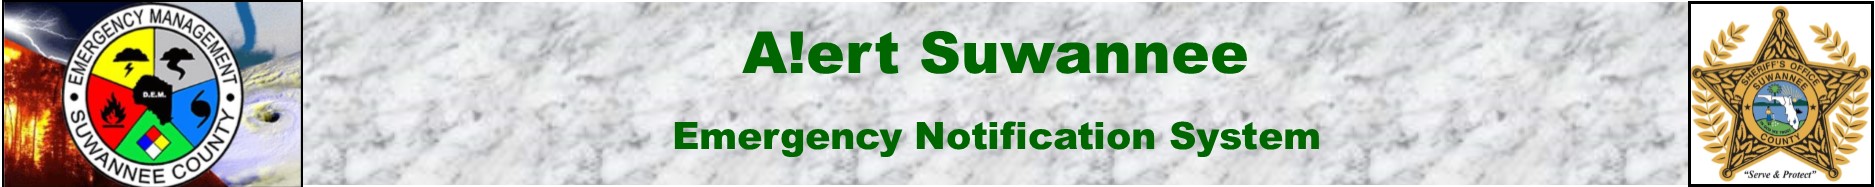 [Suwannee County - Alert Suwannee] Member Portal banner